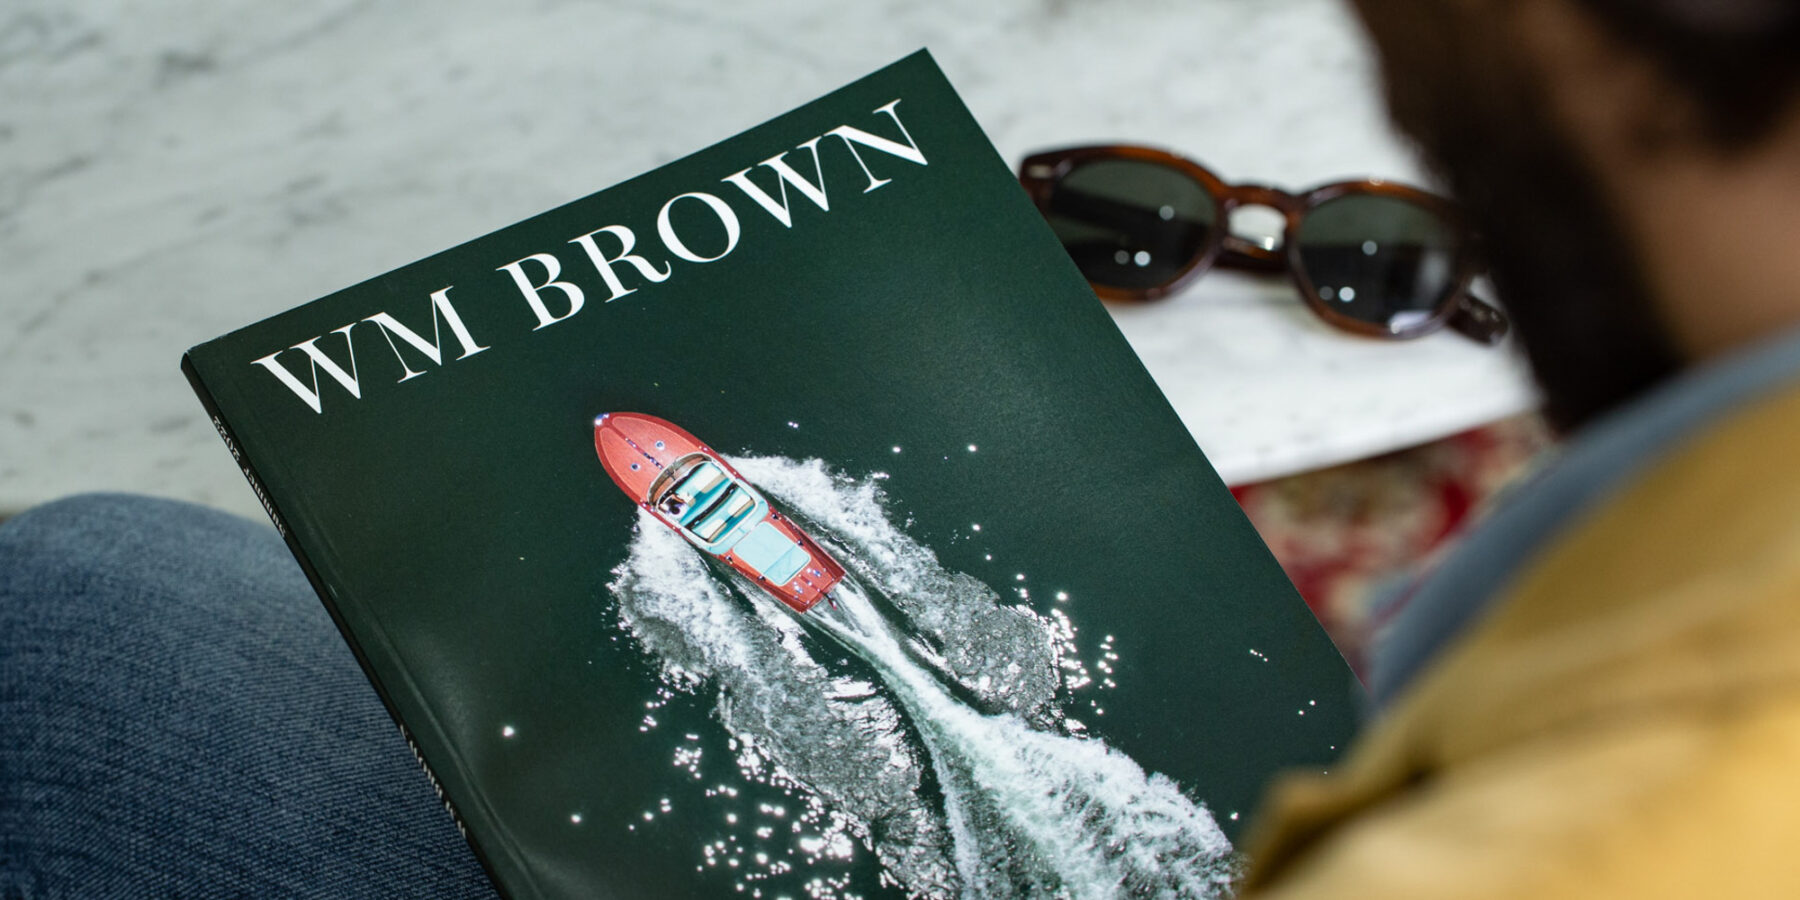 WM Brown Magazine - Summer 2022